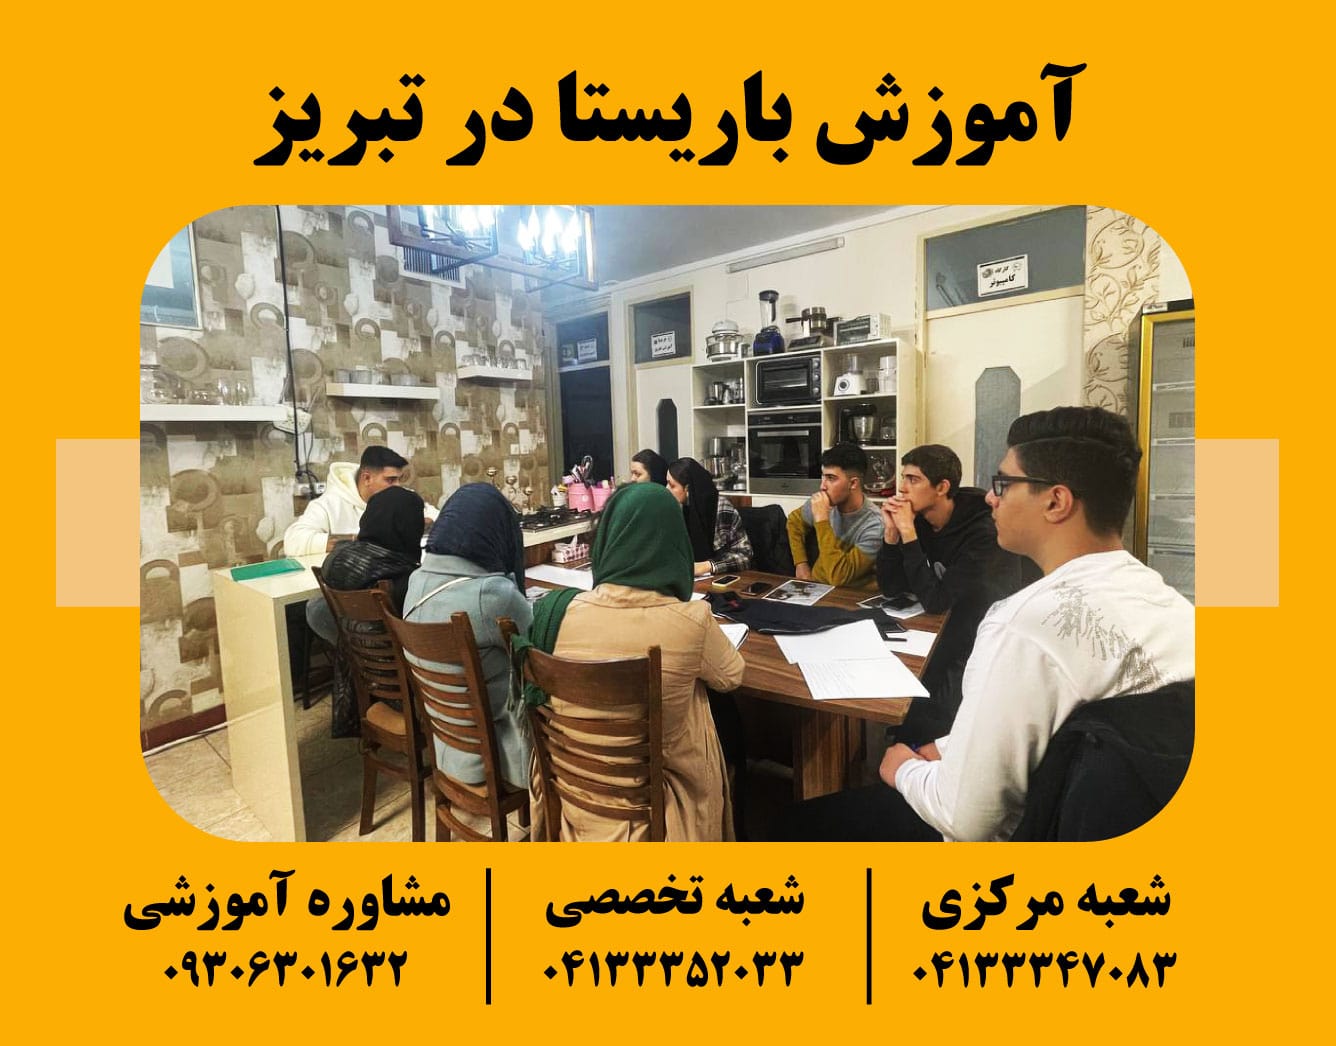 آموزش باریستا در تبریز به صورت تخصصی